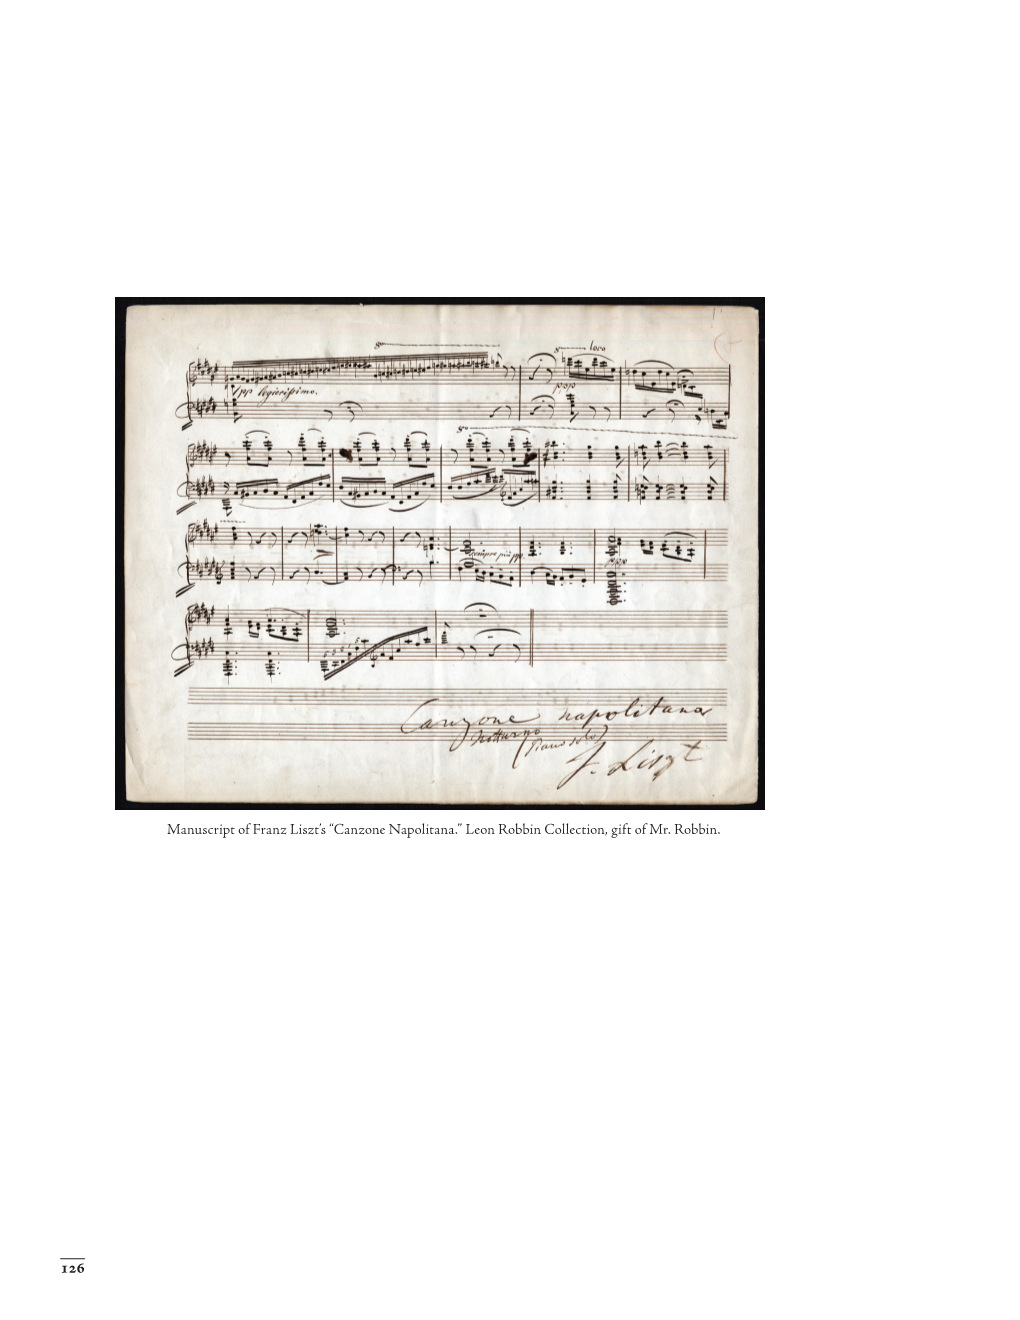 Manuscript of Franz Liszt's